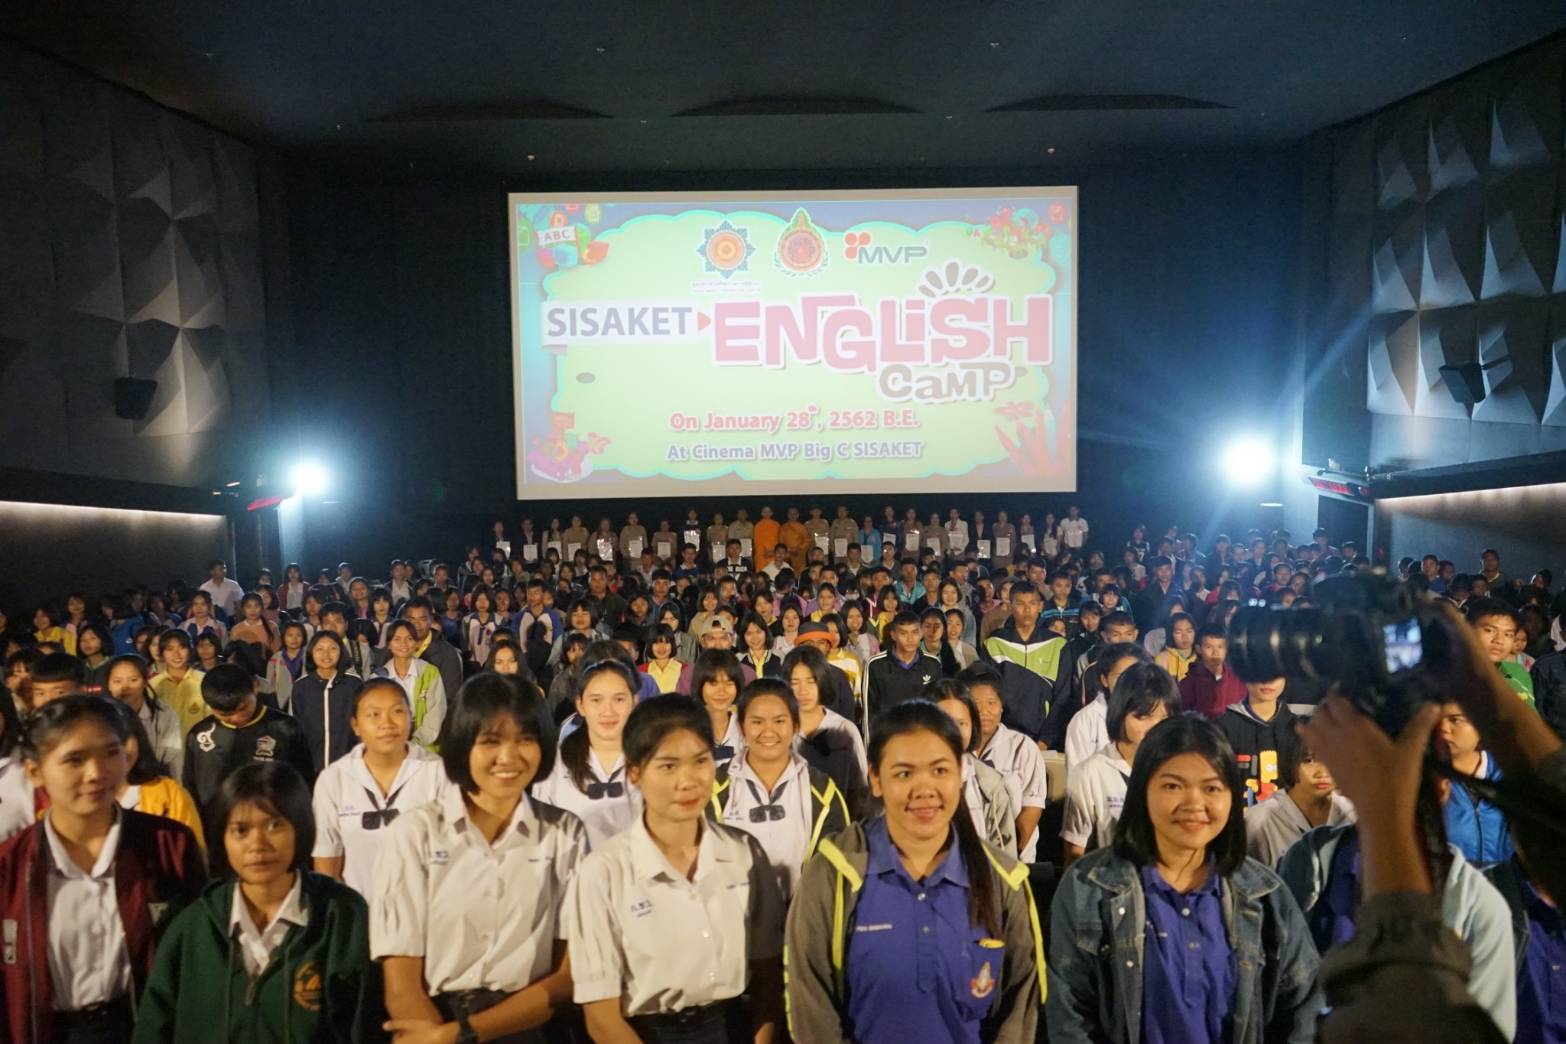 ศรีสะเกษจัดติวโอเน็ตภาษาอังกฤษ ครั้งที่ 1 มีนักเรียนเข้าร่วมกว่าพันคน